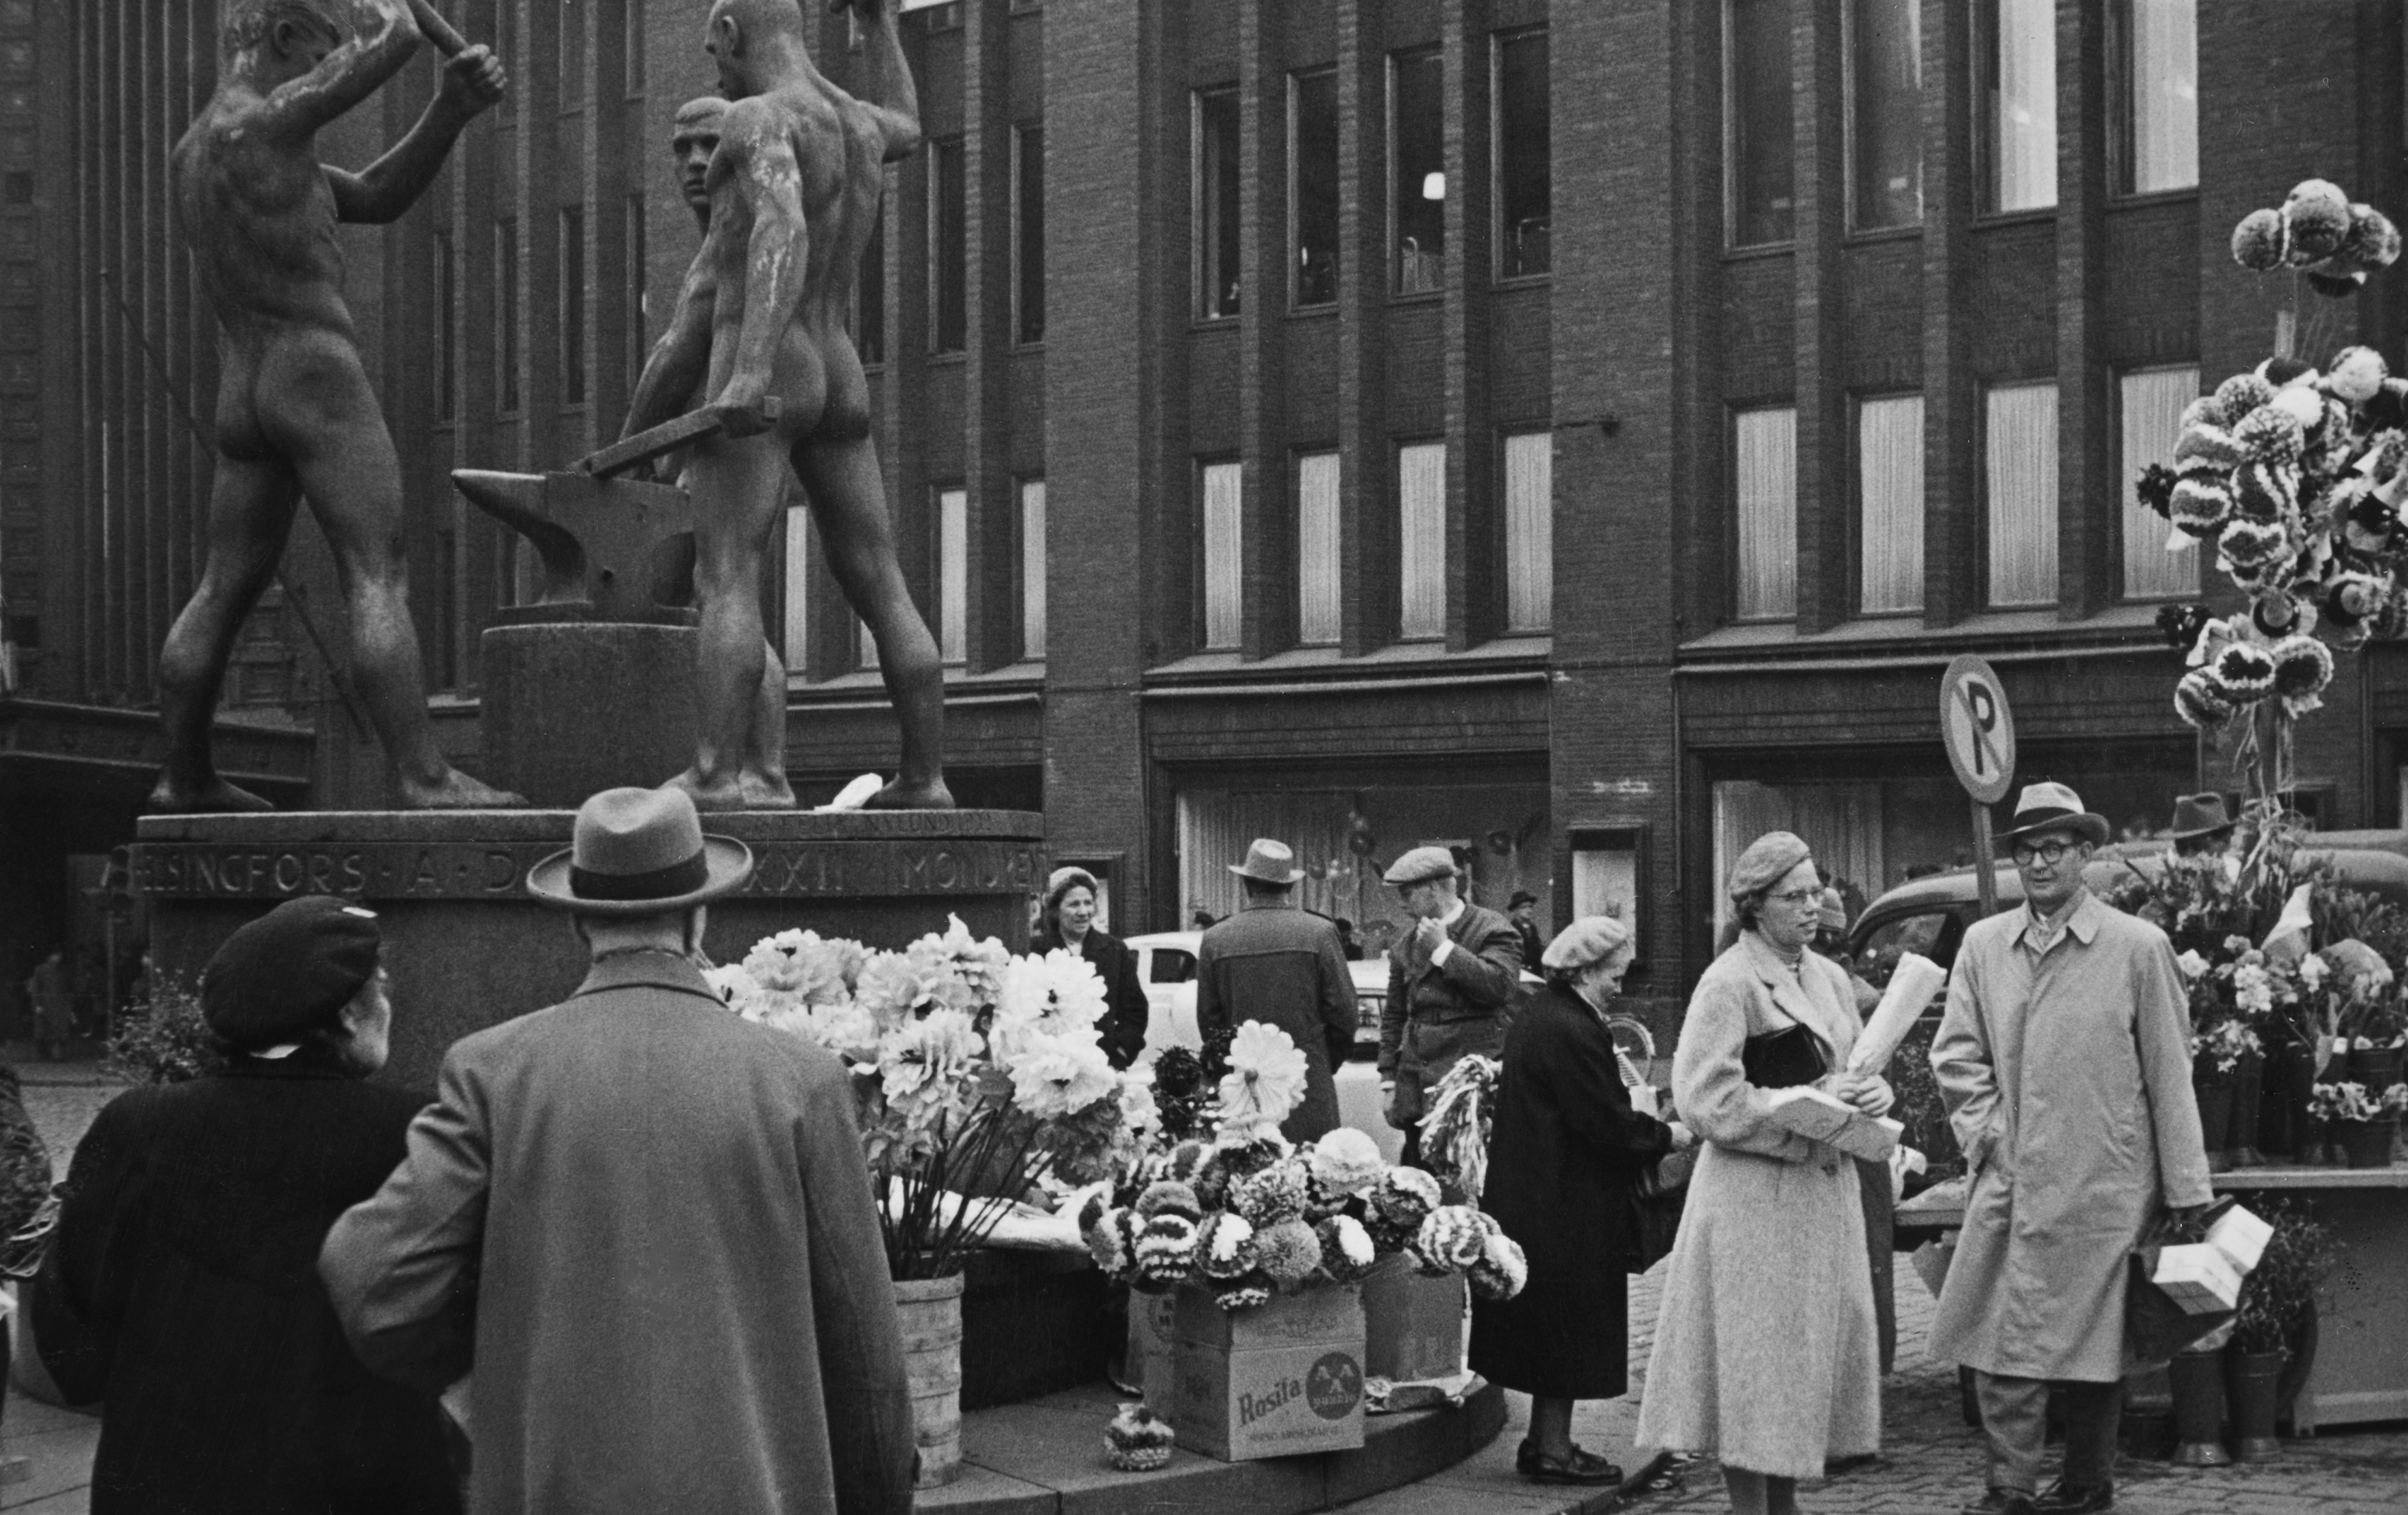 Vapputarvikkeiden myyntiä Kolmen sepän patsaan vieressä vapunaattona. Taustalla Stockmannin tavaratalo.